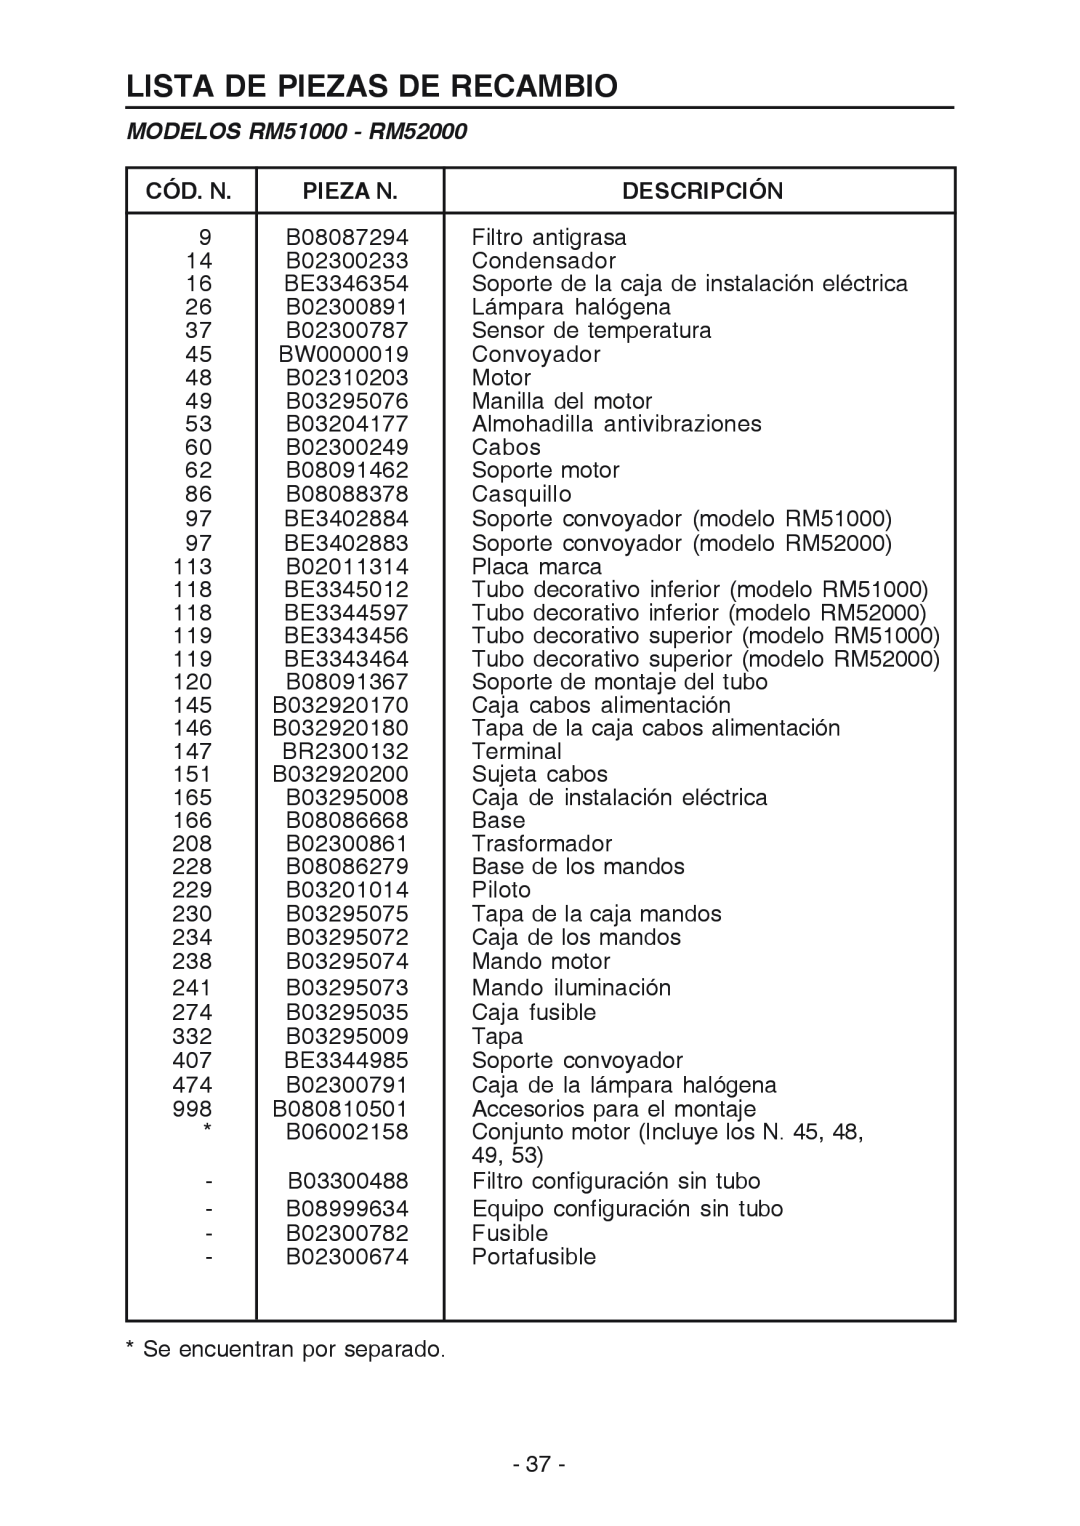 Broan RM519004 manual Lista De Piezas De Recambio, MODELOS RM51000 - RM52000, Cód. N, Pieza N, Descripción 